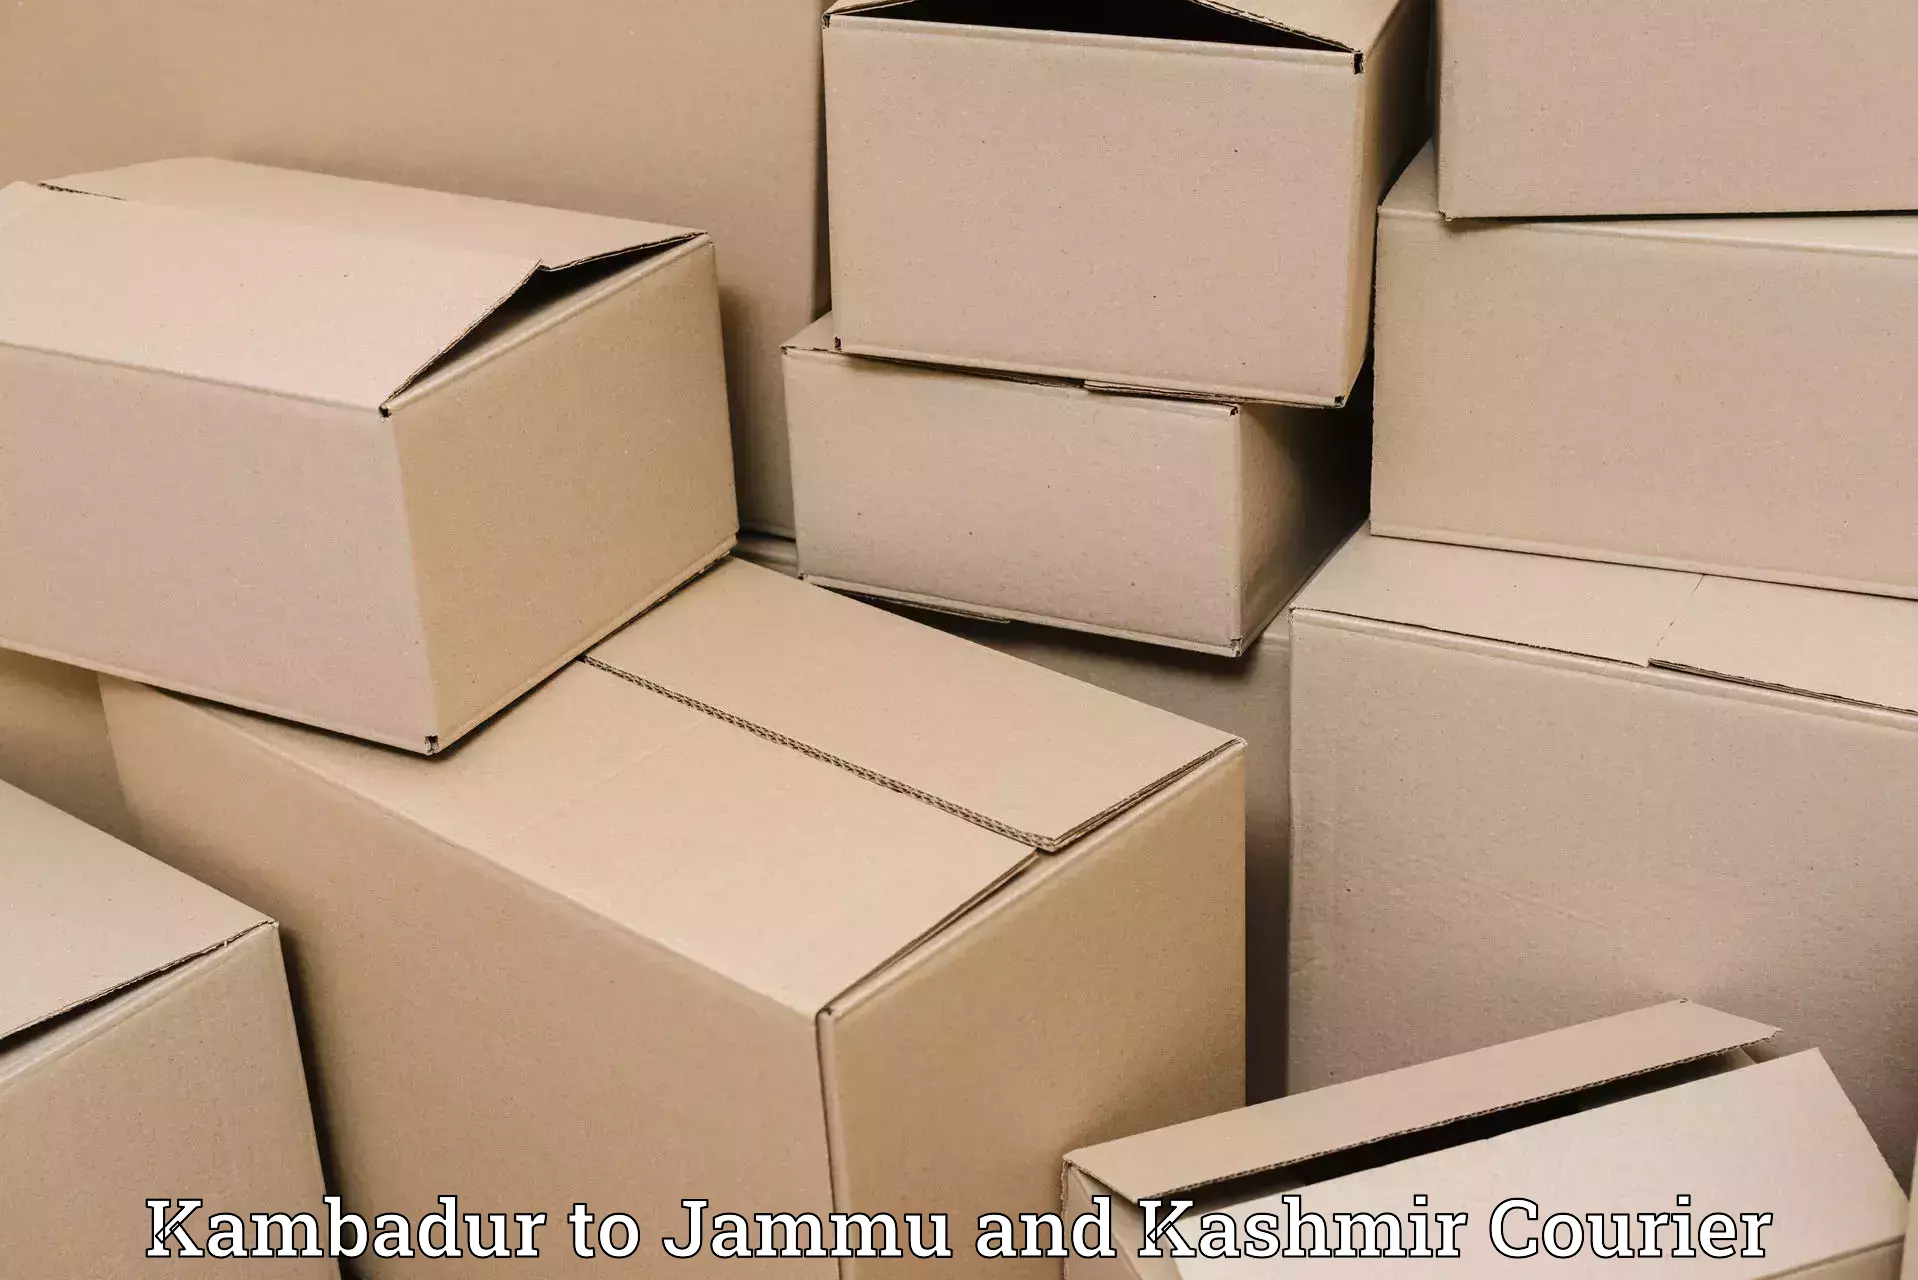 Reliable package handling Kambadur to Bandipur